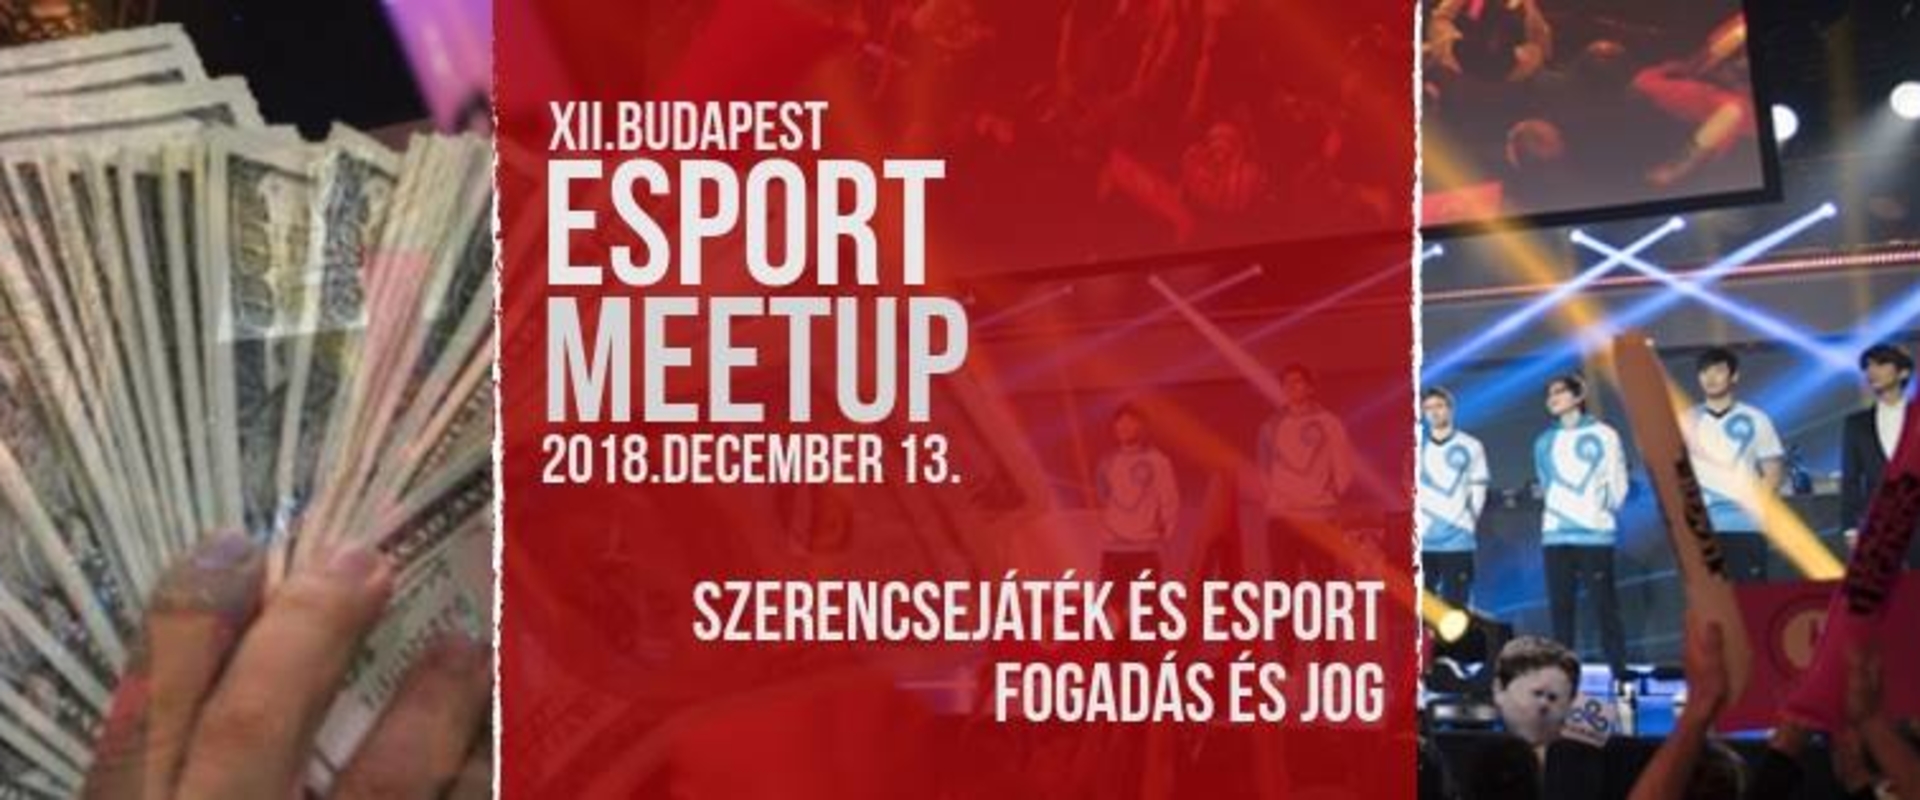 Budapest Esport MeetUp: szerencsejáték és az e-sport